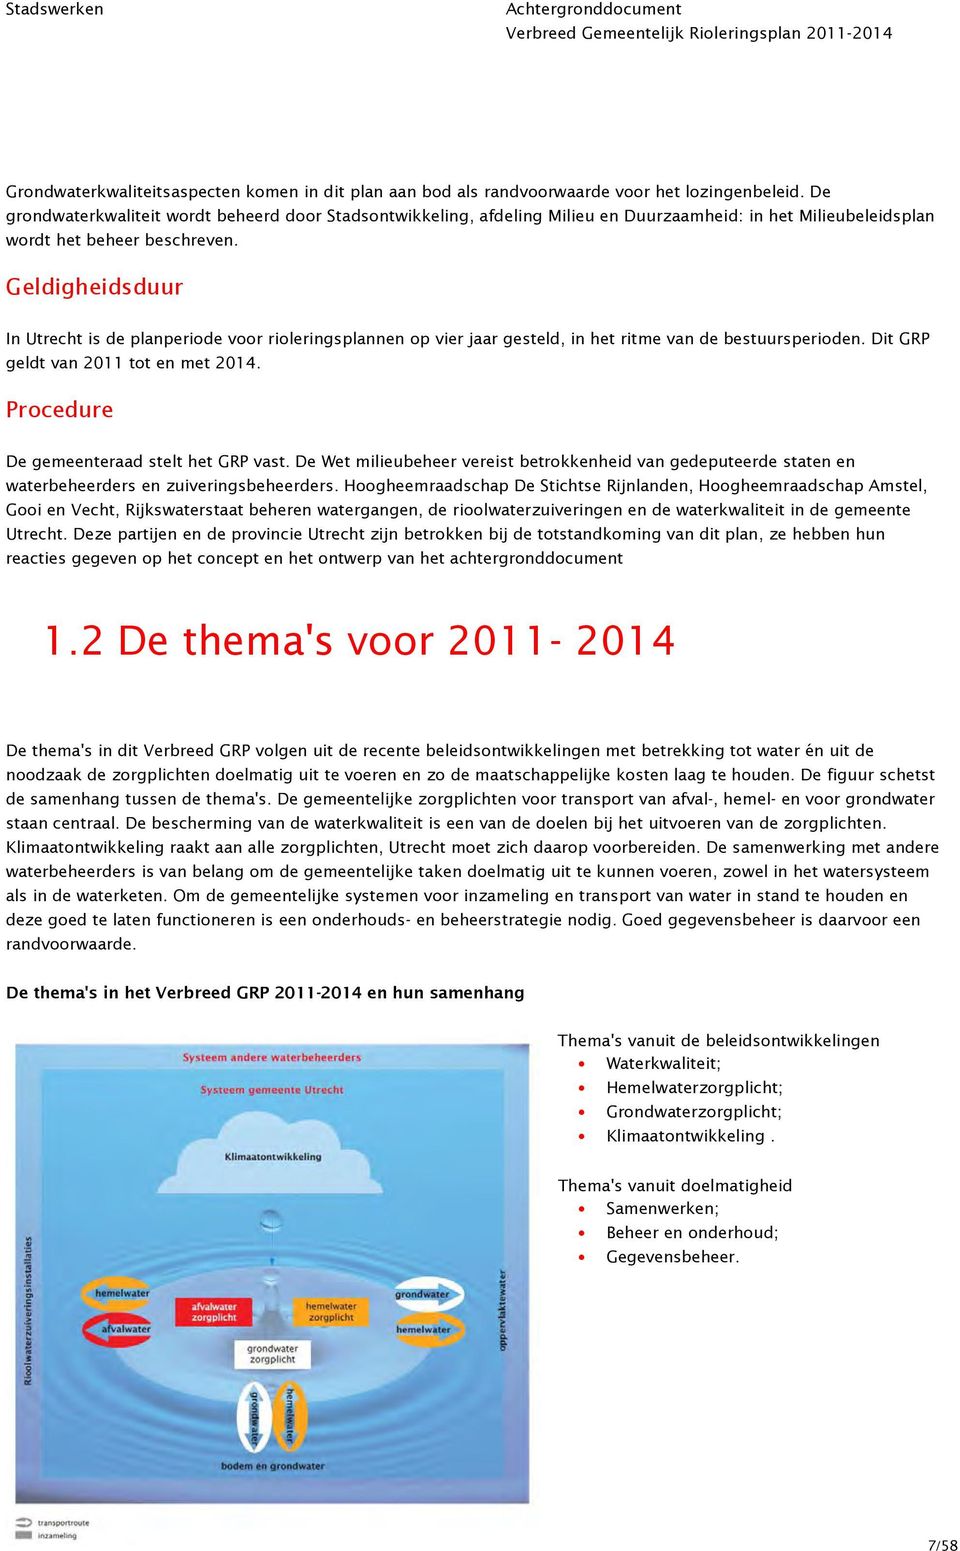 Geldigheidsduur In Utrecht is de planperiode voor rioleringsplannen op vier jaar gesteld, in het ritme van de bestuursperioden. Dit GRP geldt van 2011 tot en met 2014.